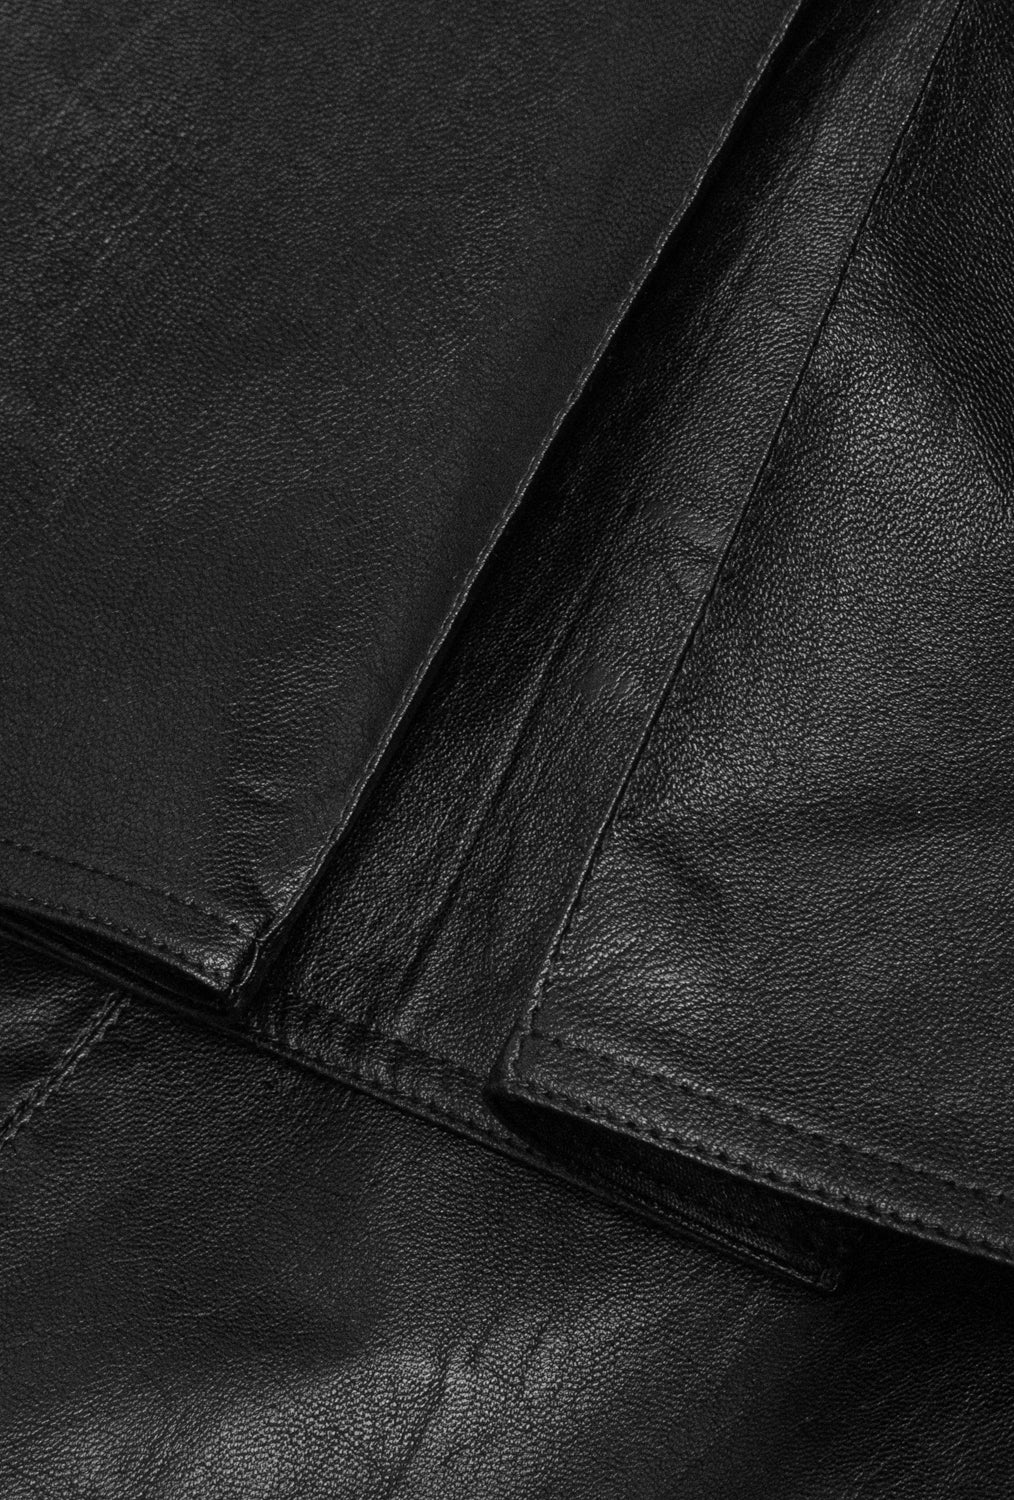 Trench coat black